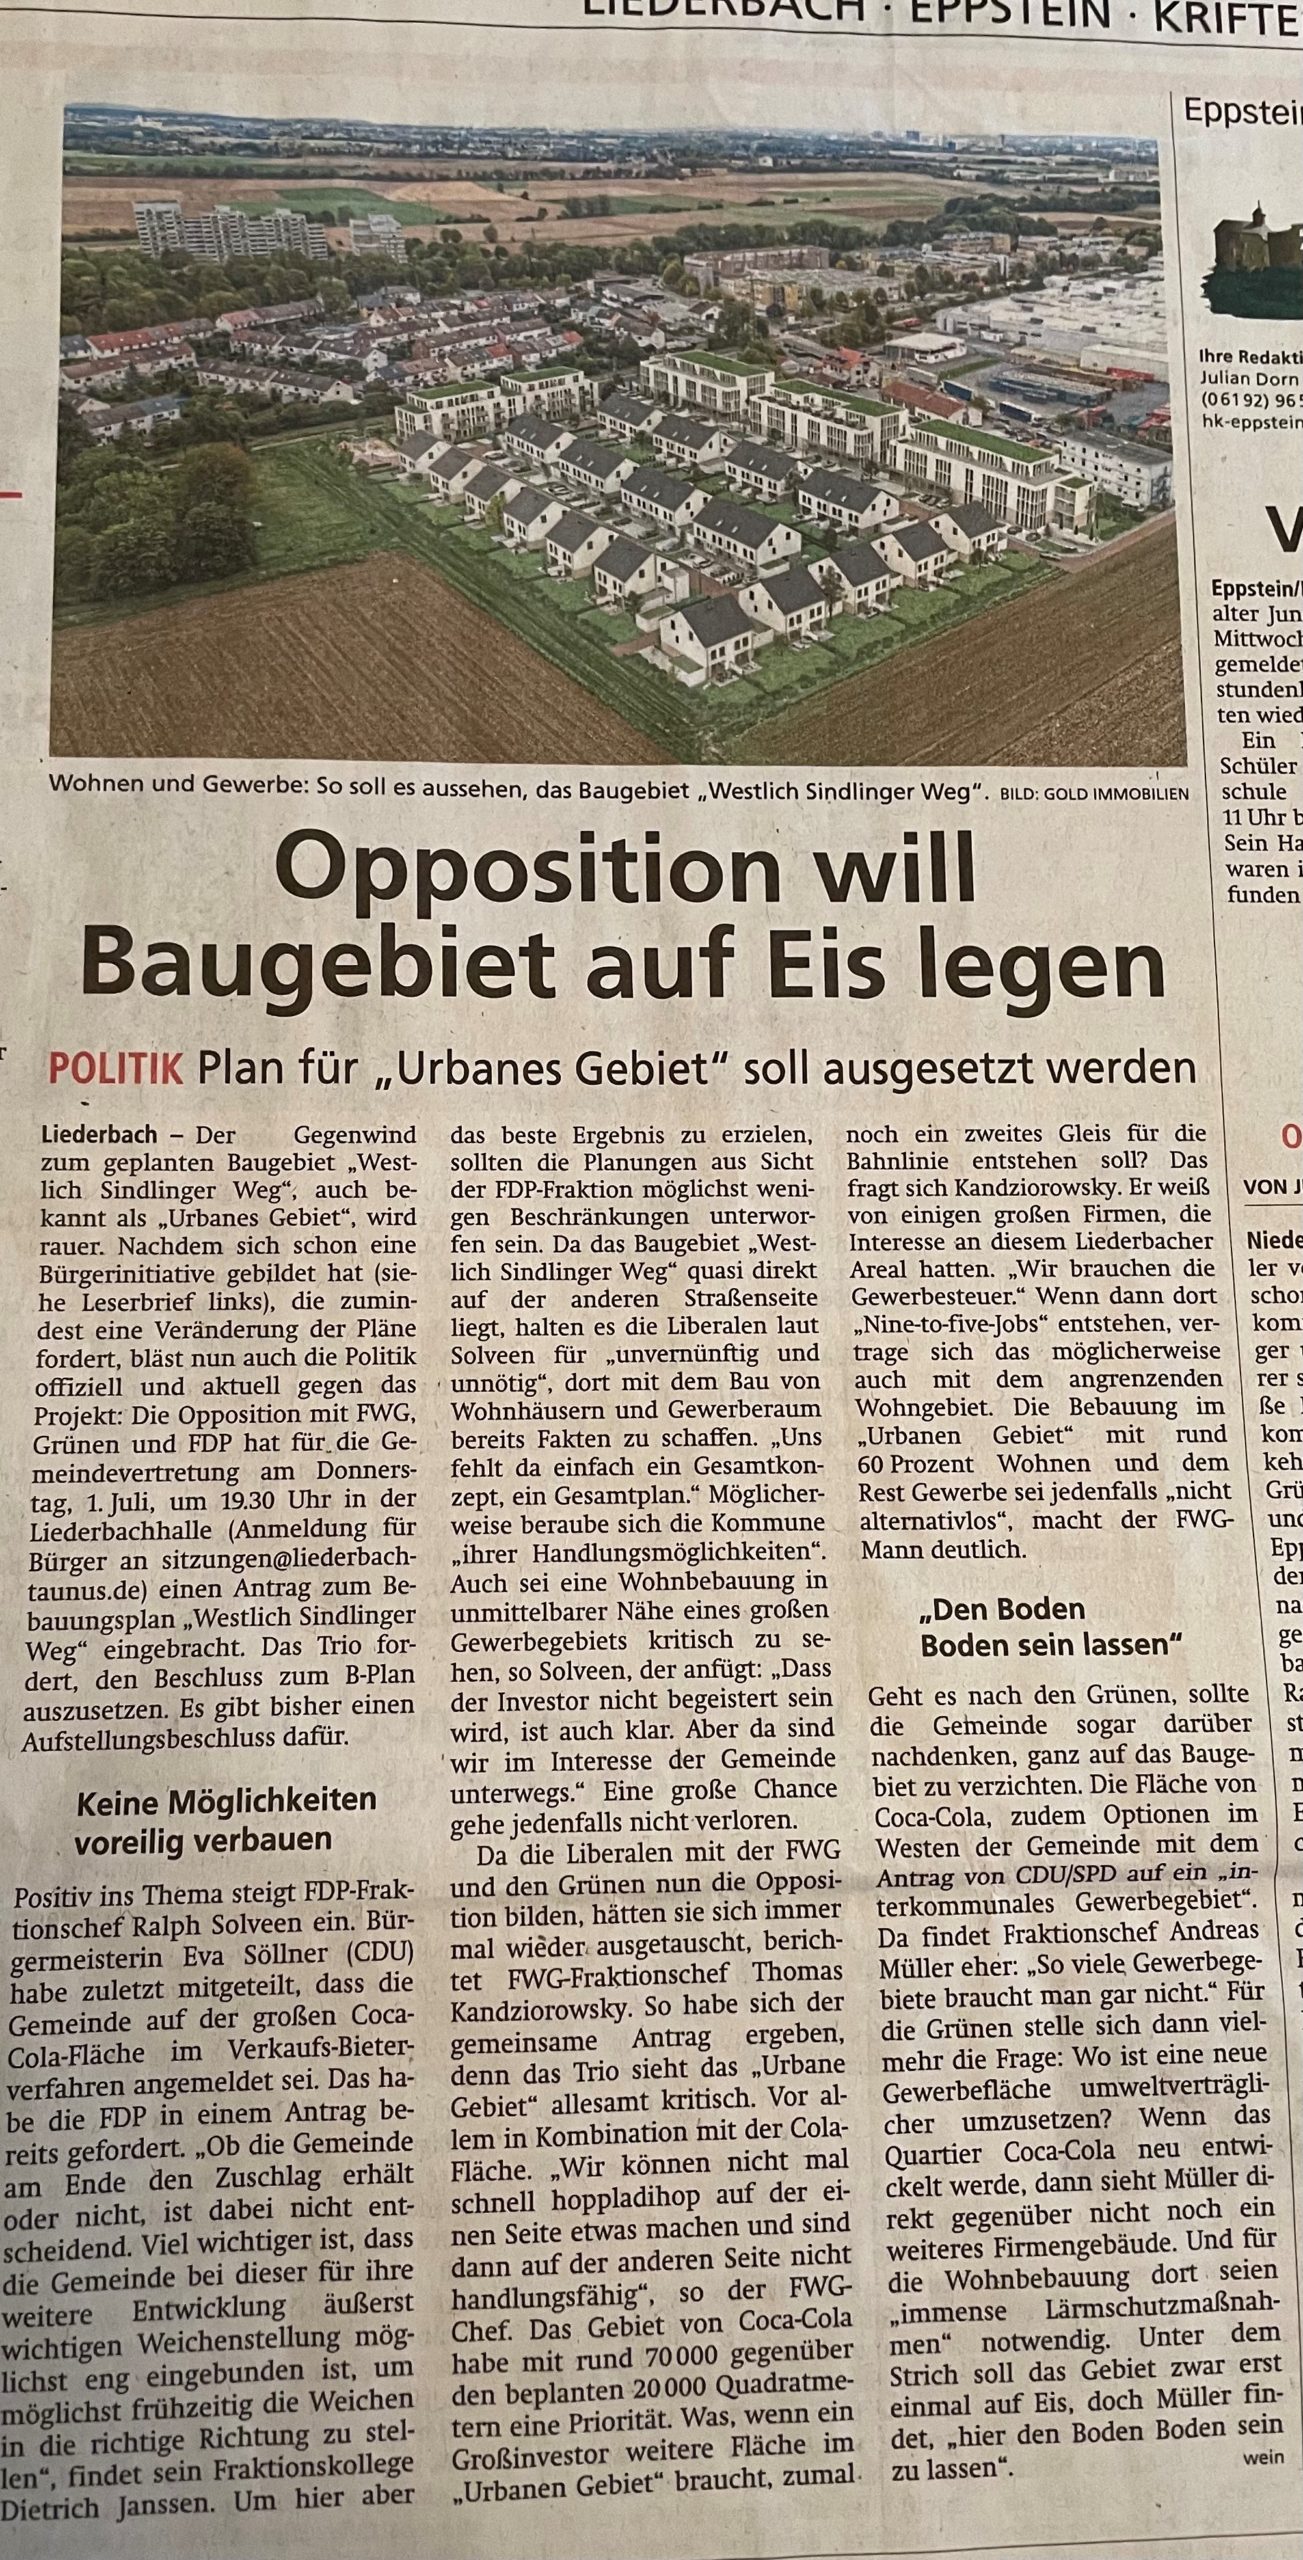 Artikel im Höchster Kreisblatt vom 24.Juni 2021-"Opposition will Baugebiet auf Eis legen"